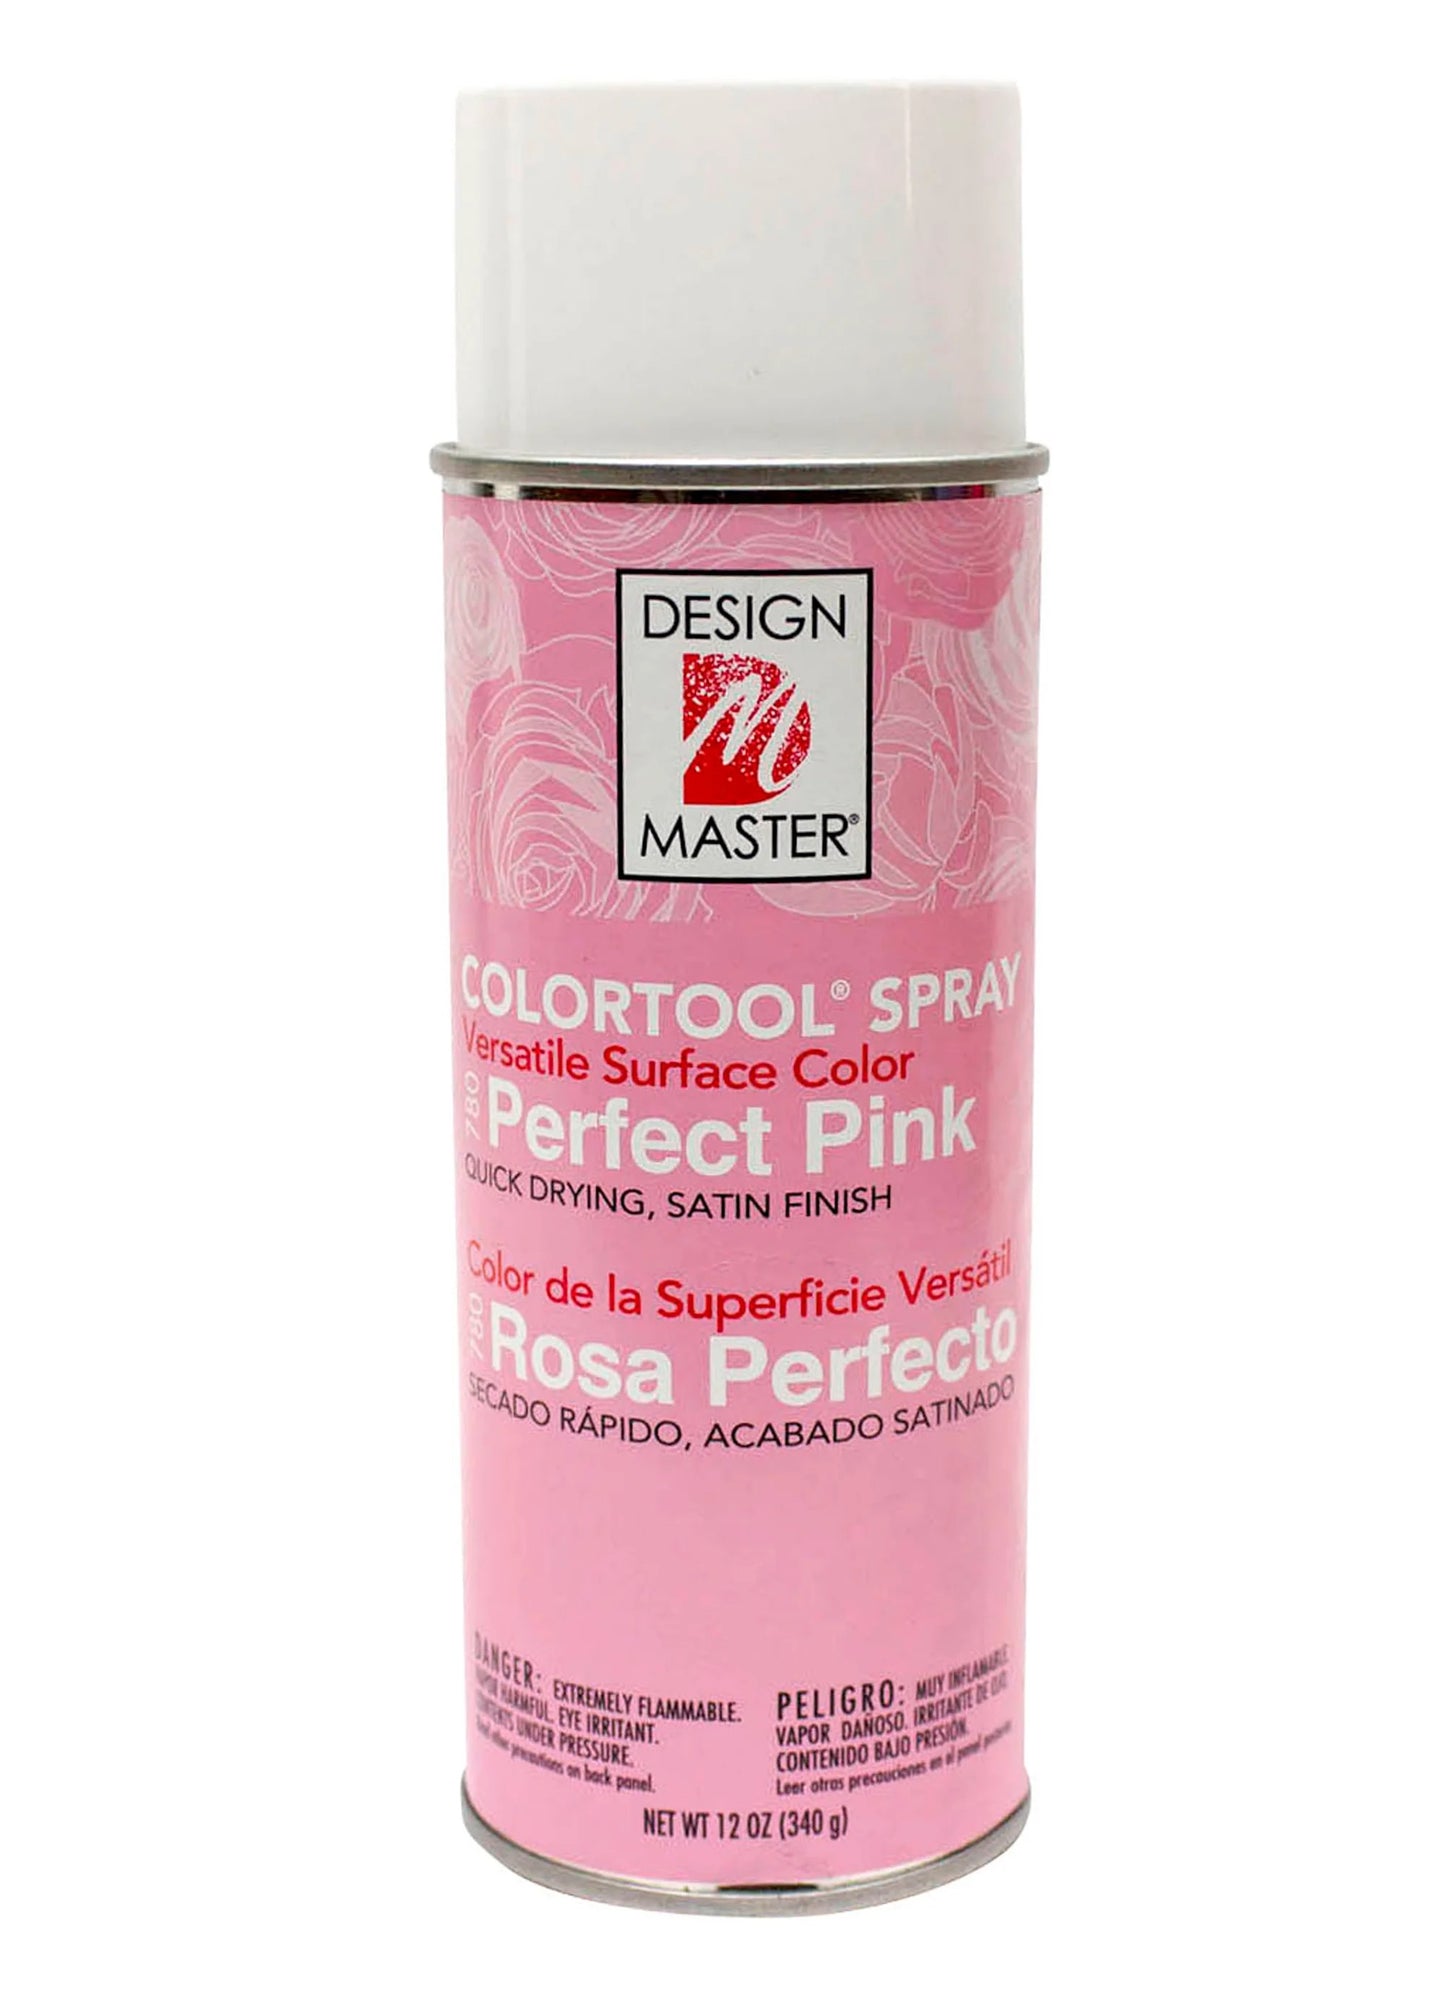 Perfect Pink DM Floral Paint